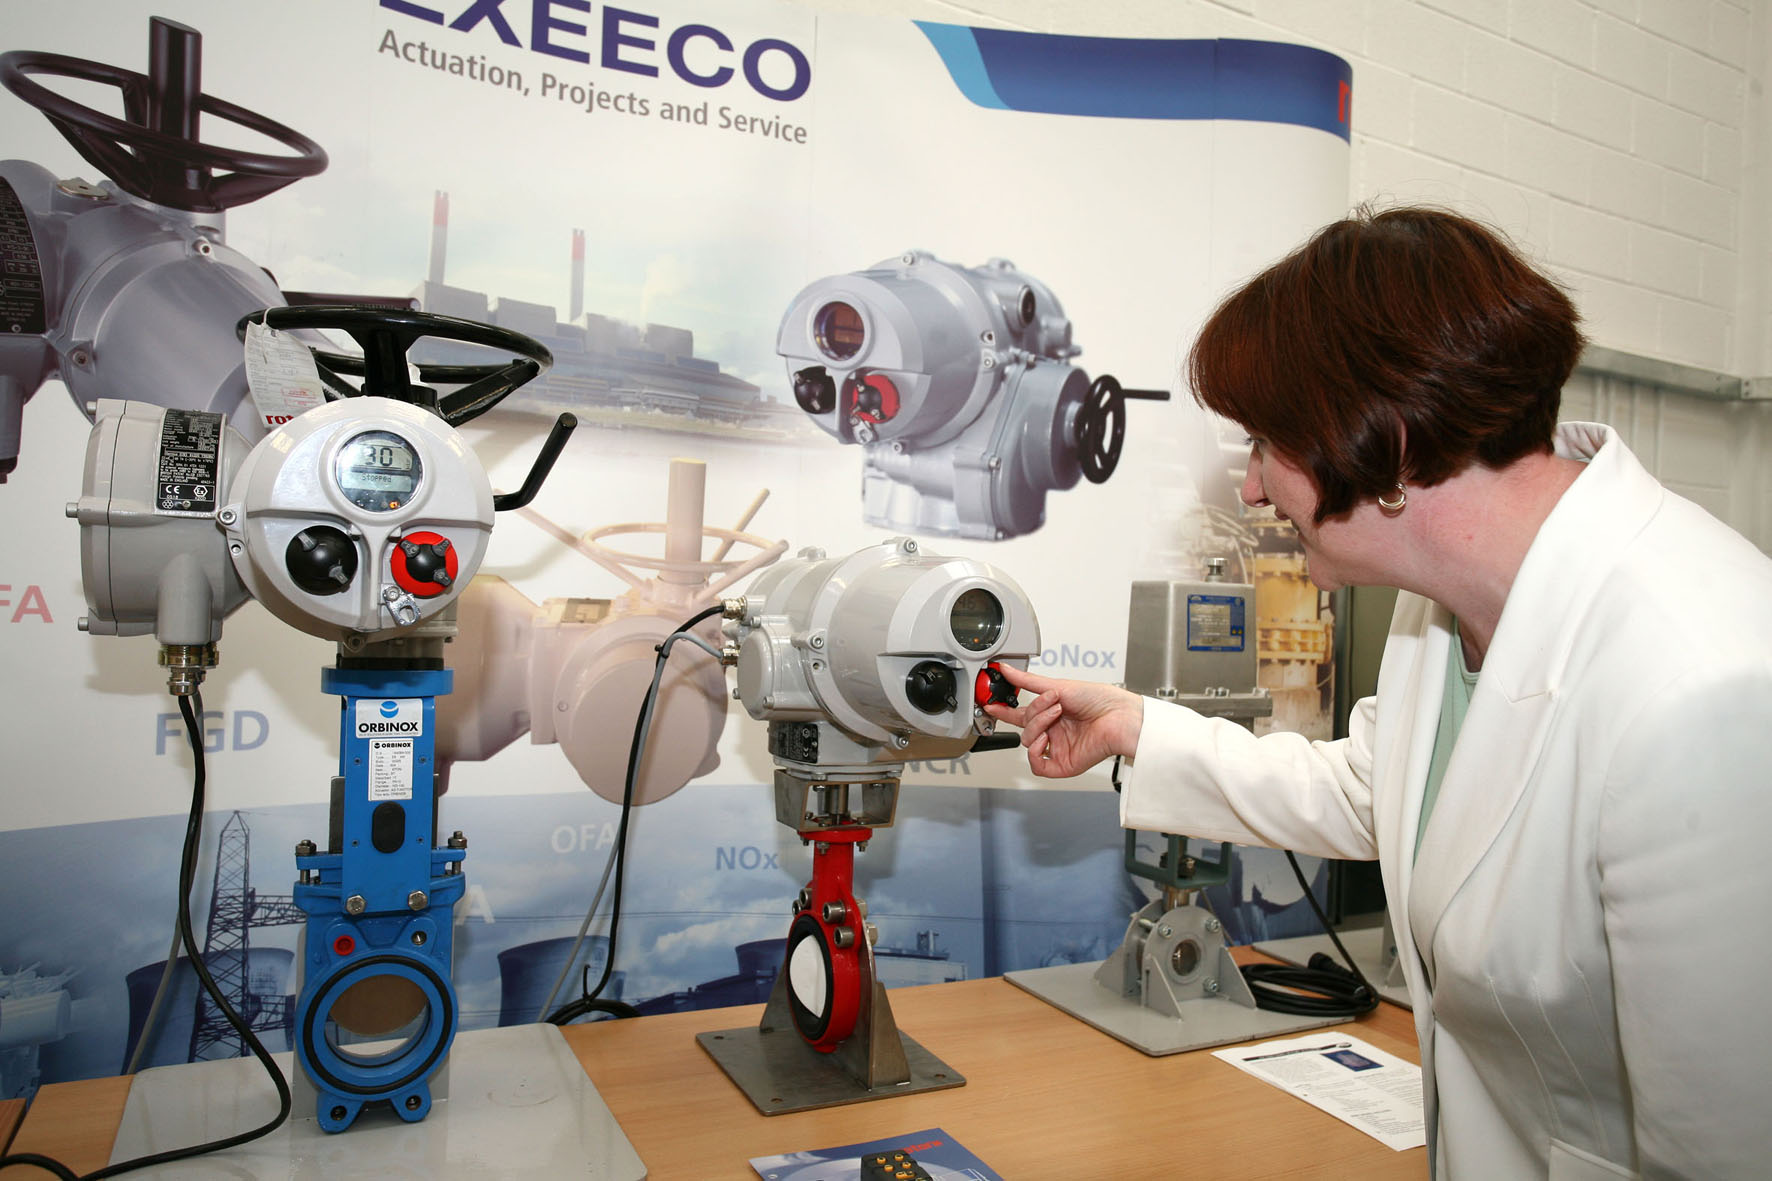 Exeeco戴上一个在英国新能源培训中心